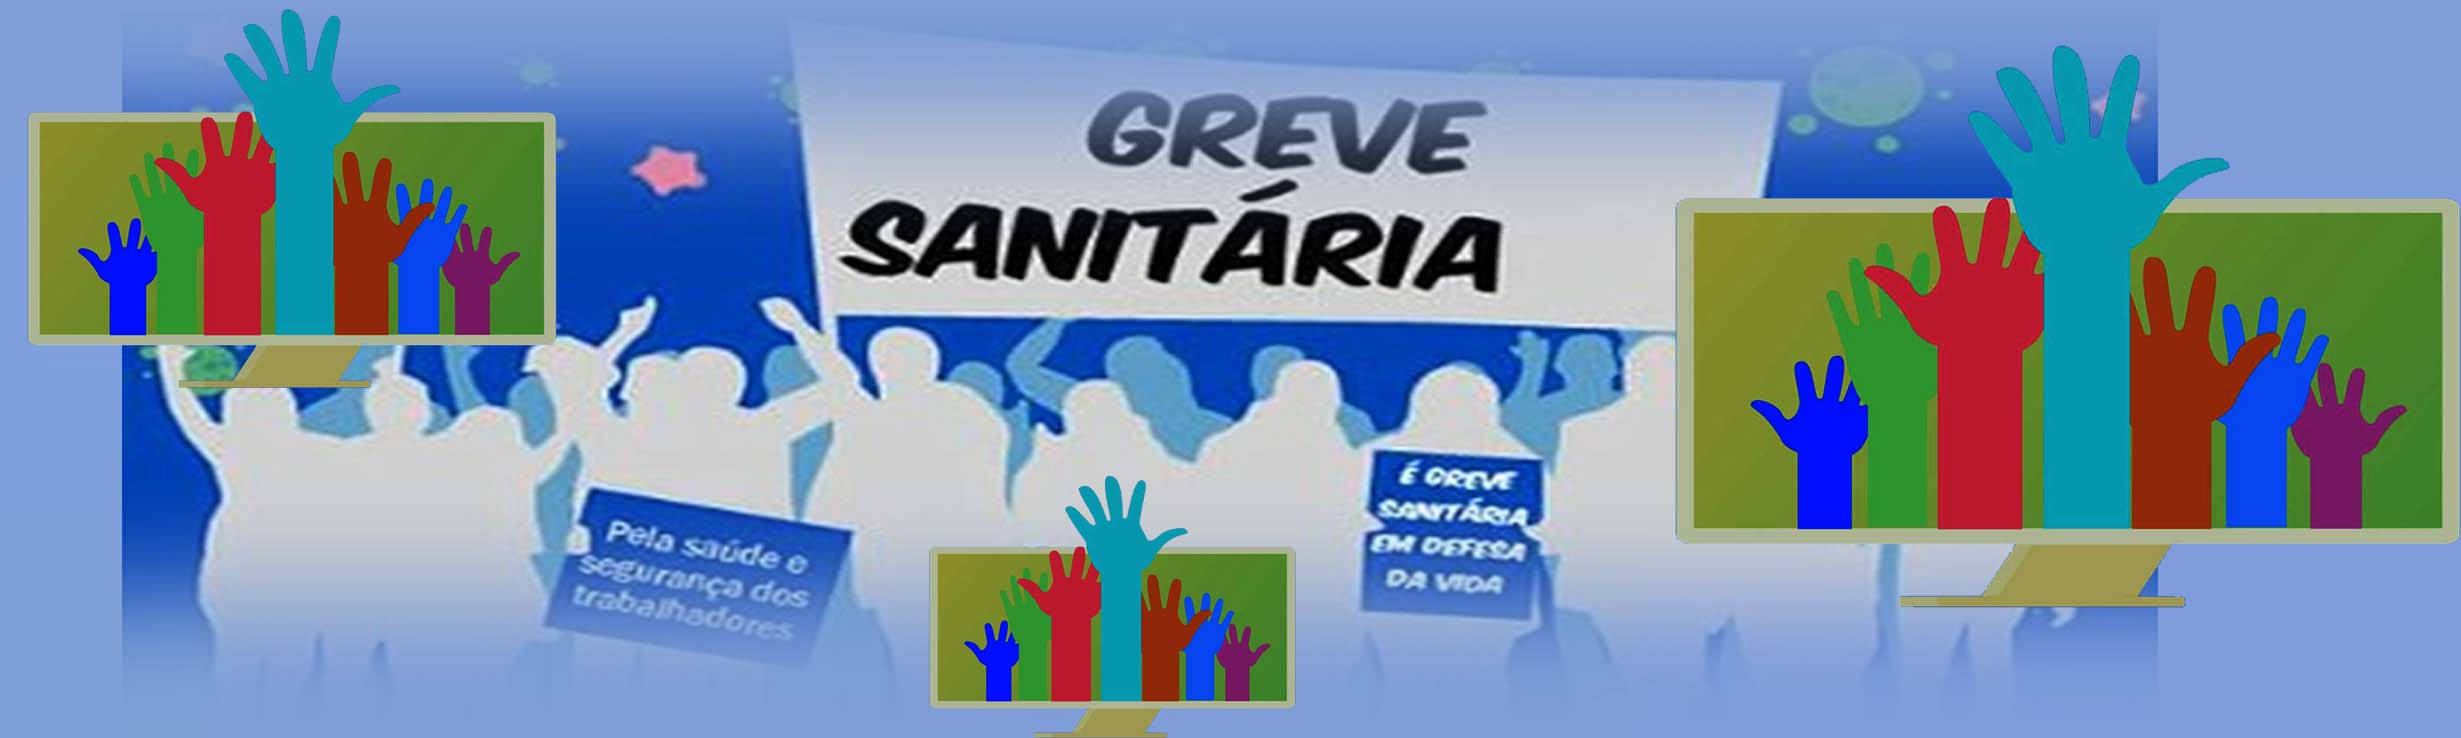 Cresce a GREVE SANITÁRIA em defesa da vida – Veja comunicado do Sinteps, mapa, repercussão na imprensa e chamado à Assembleia em 7/8